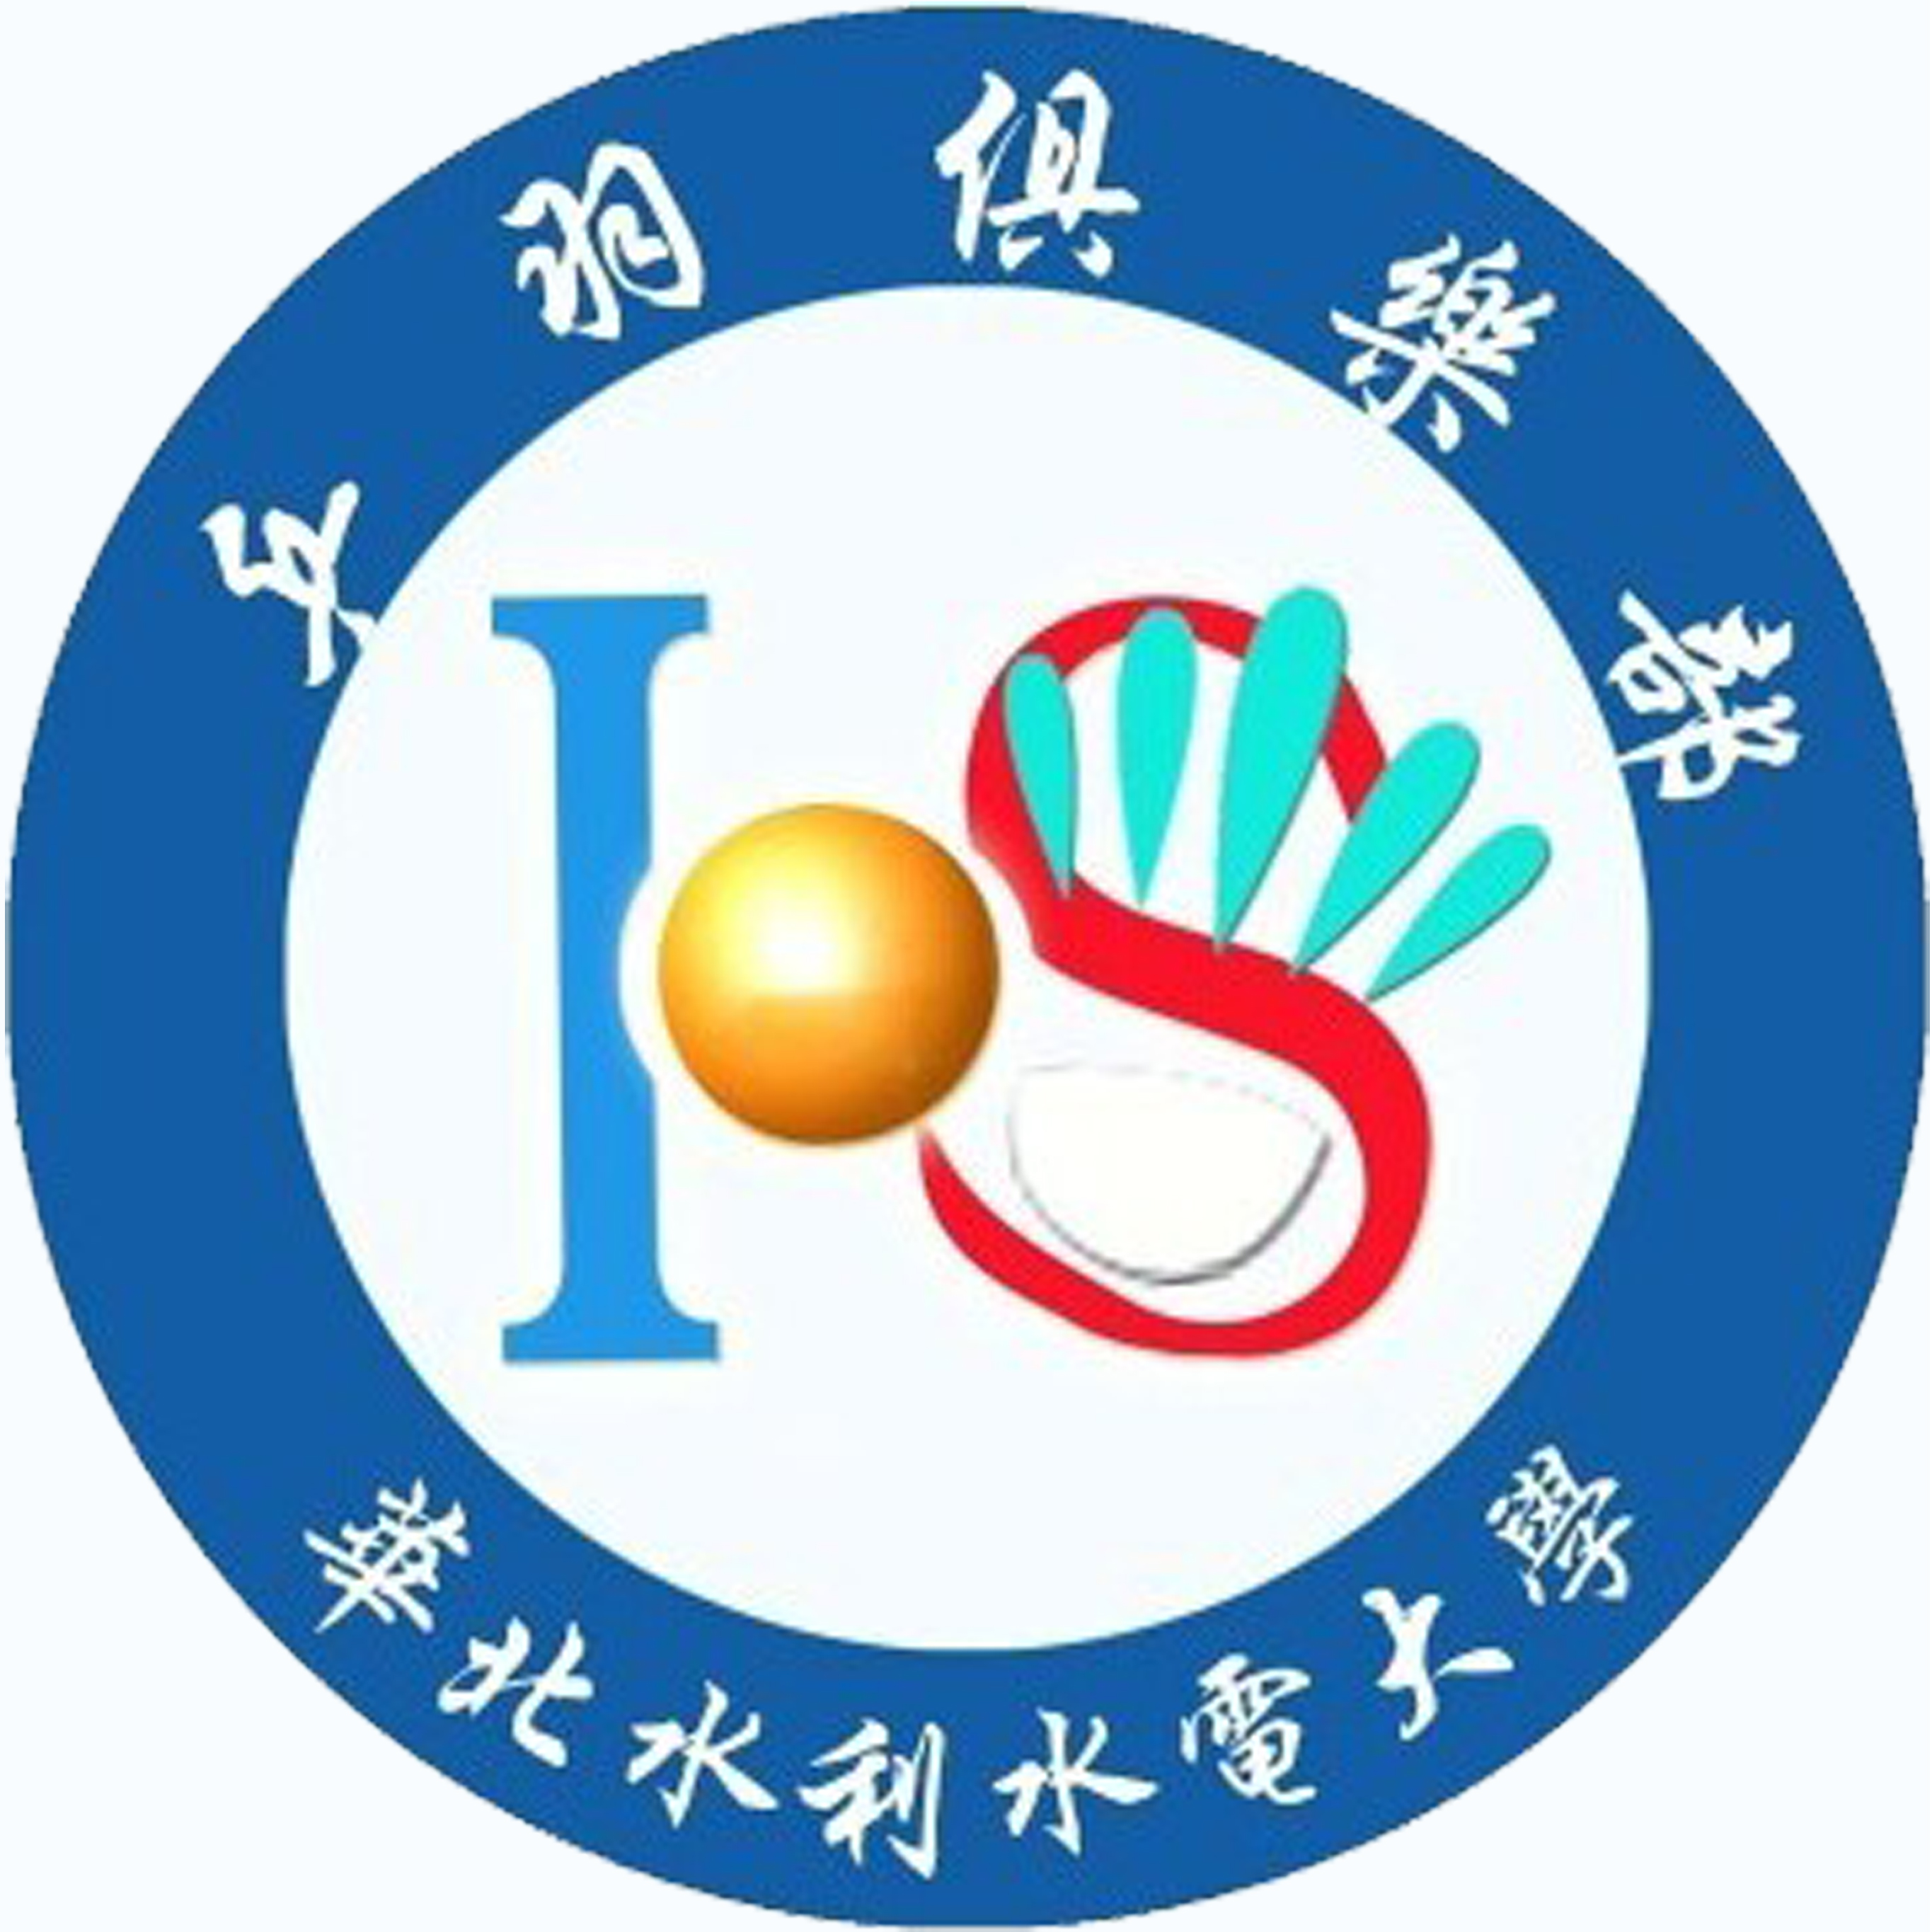 華北水利水電大學乒羽俱樂部